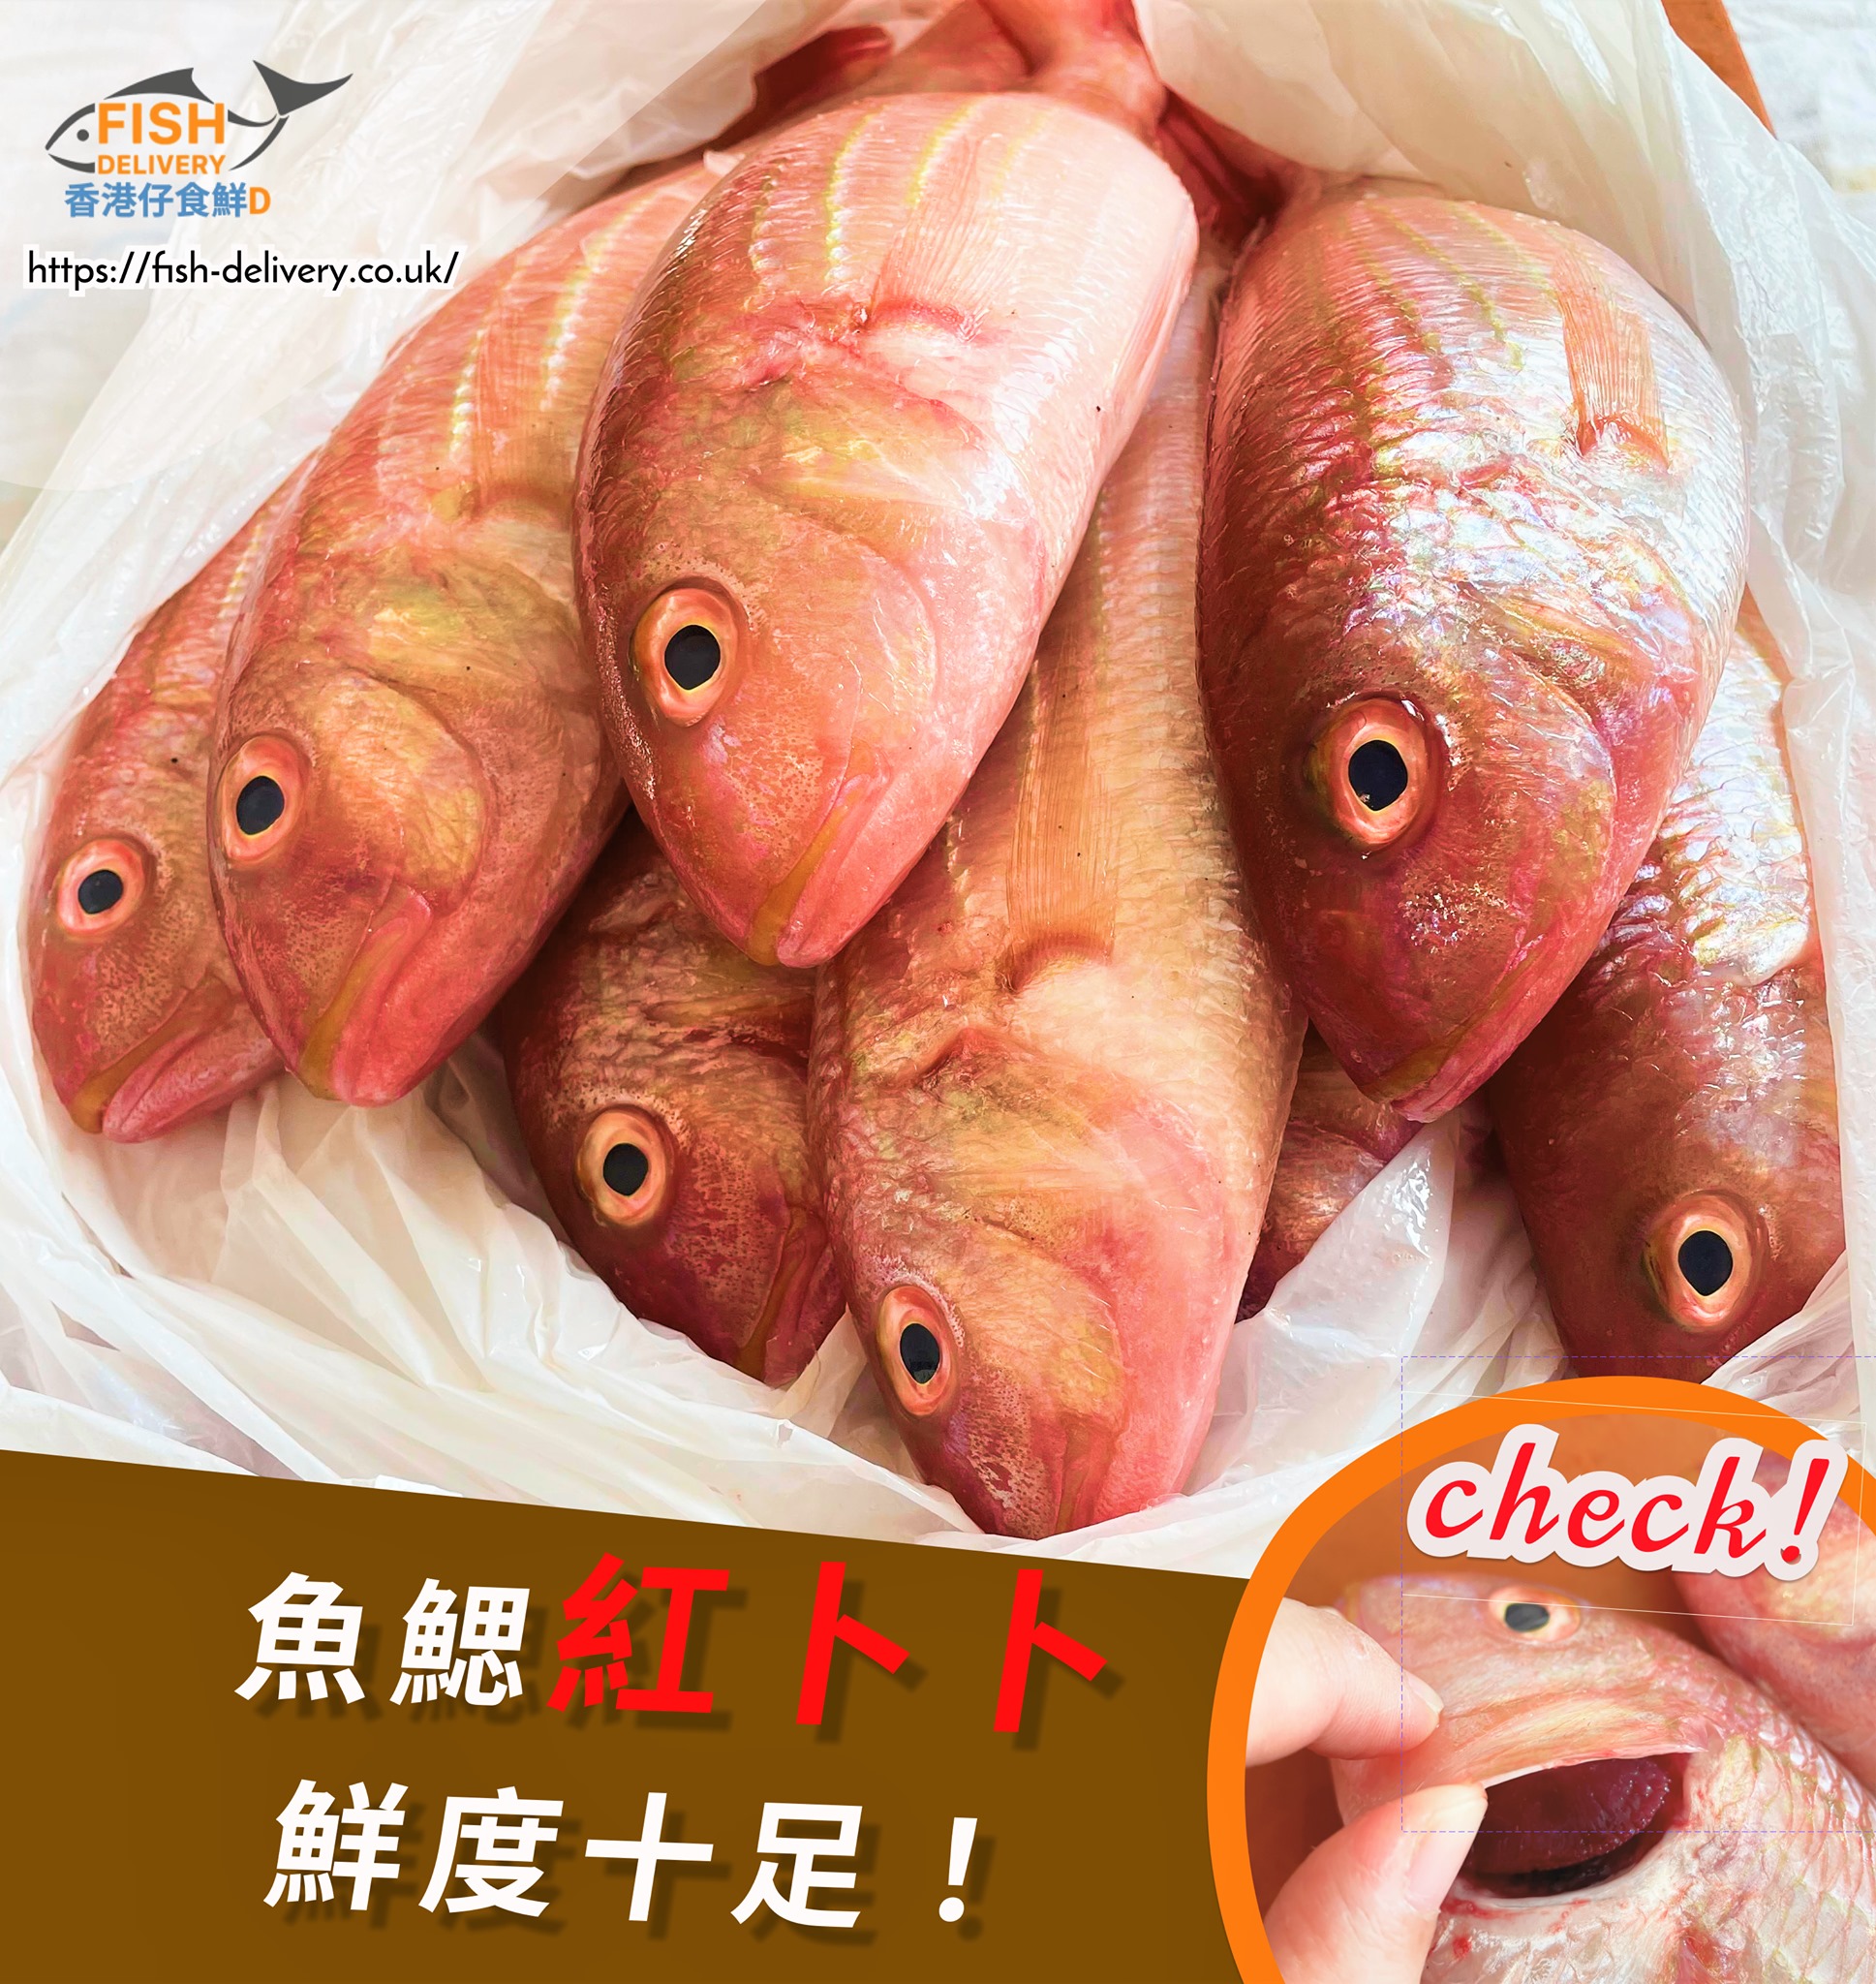 香港仔食鮮d 10月推介 幸運紅衫魚 Fish Delivery Uk